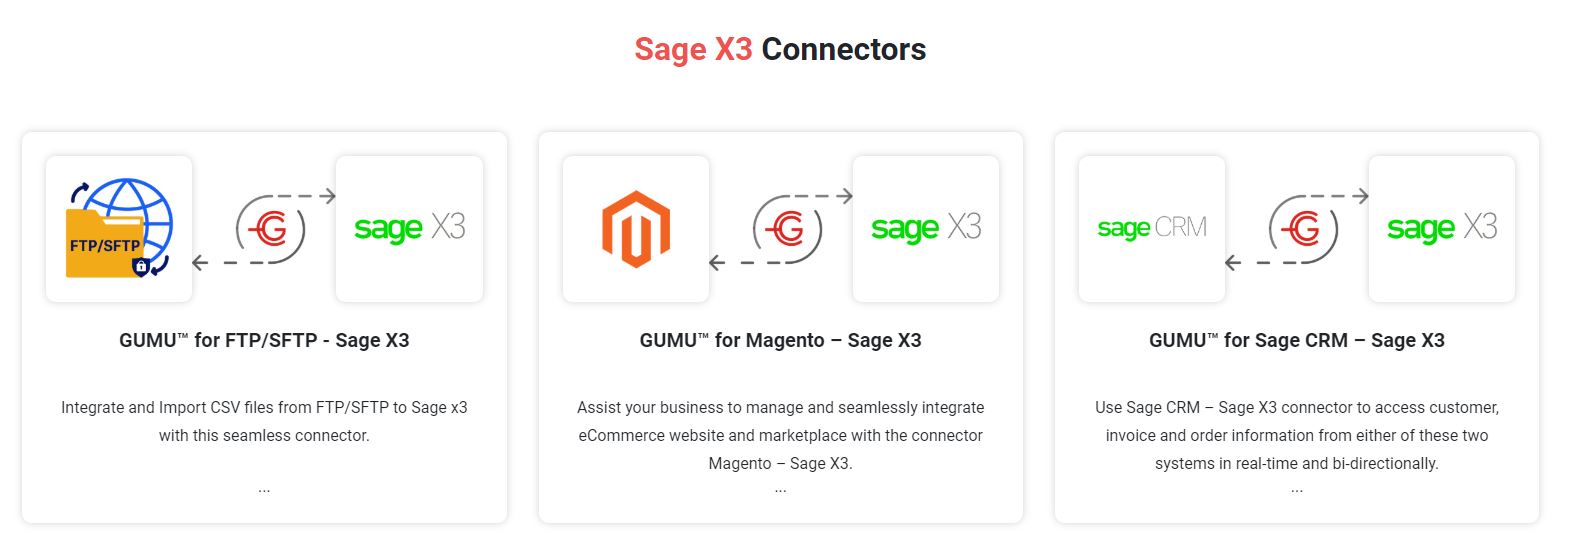 ERP Sage X3 Connector